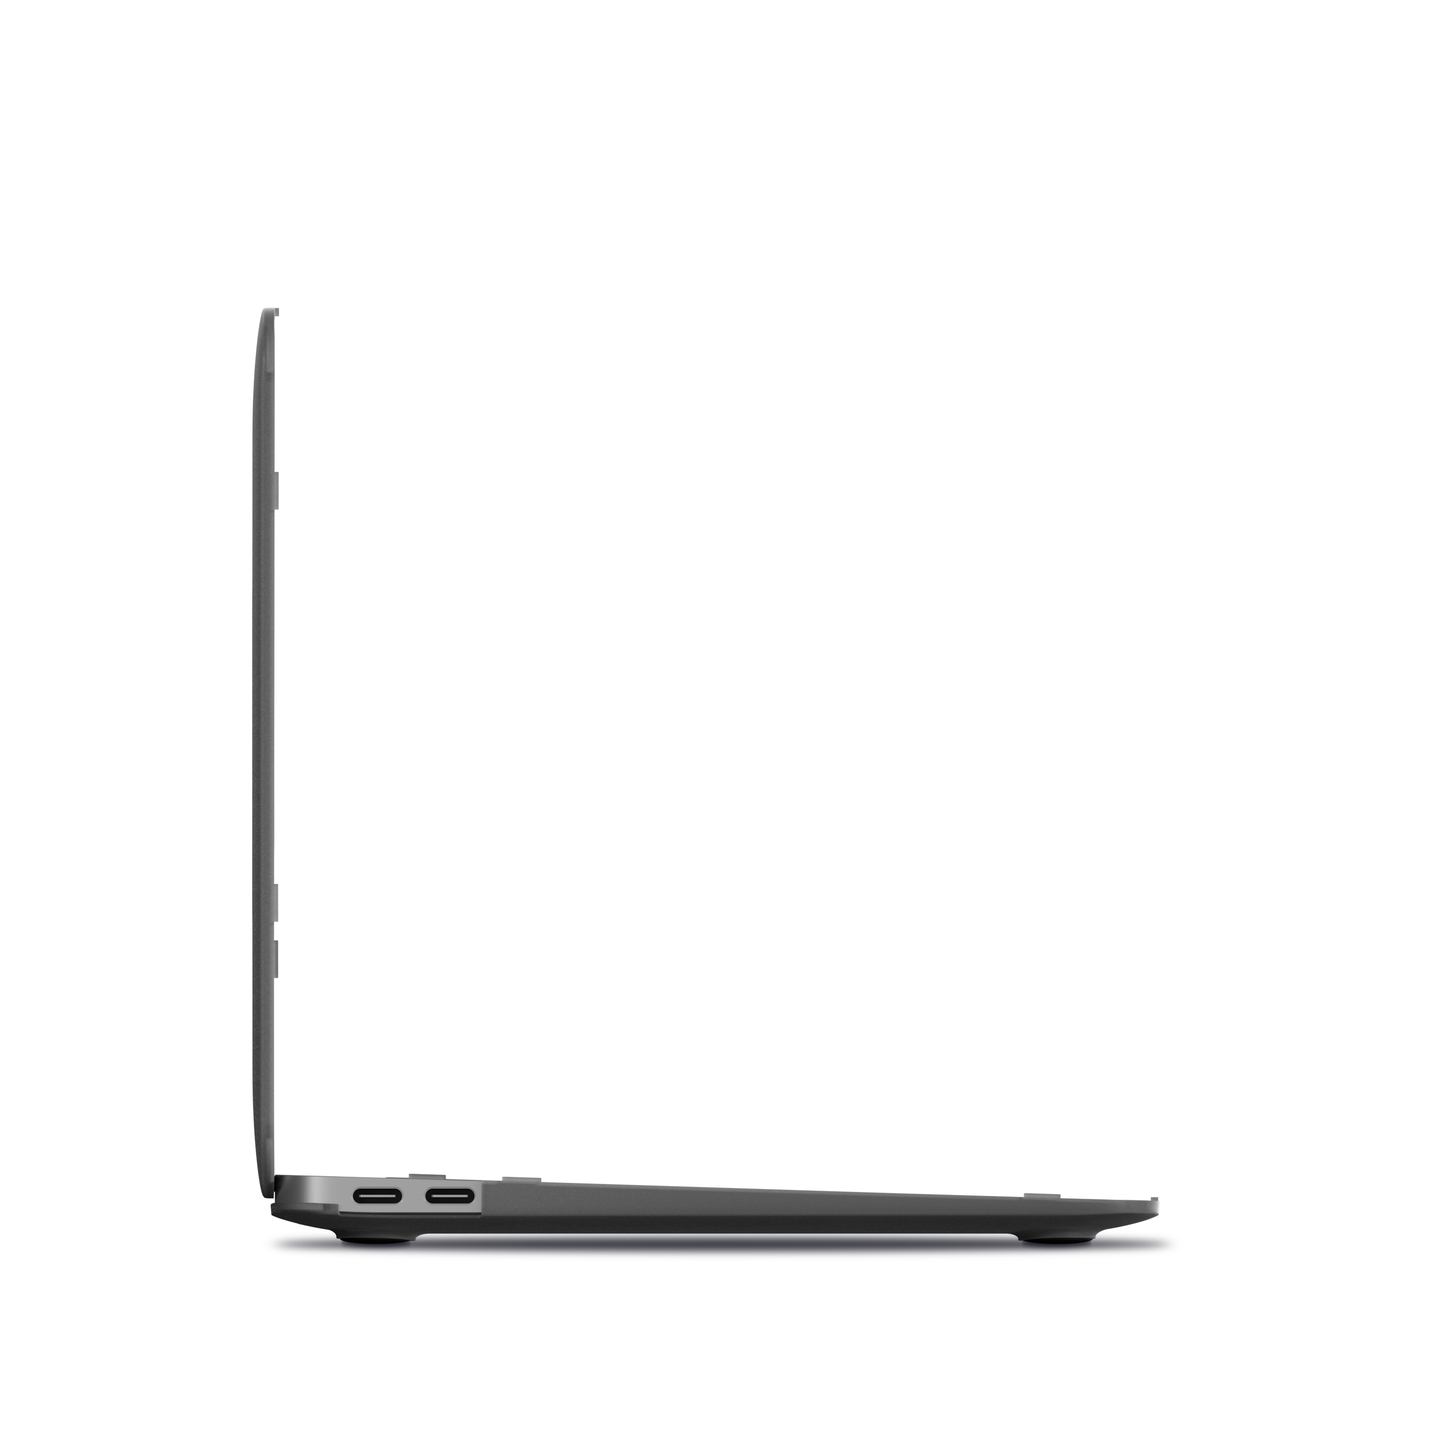 NEXT.ONE MacBook Hartschale passgenau für MacBook Air 13" M1 2020 - Smoke